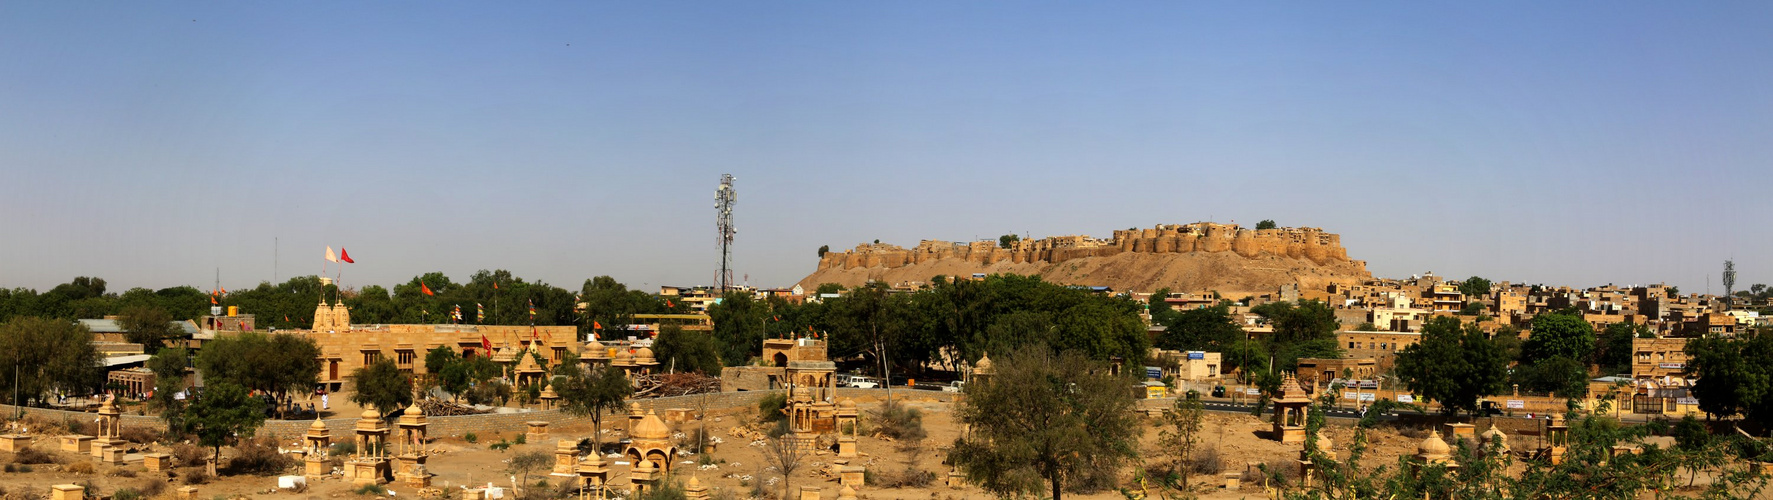  Jaisalmer.